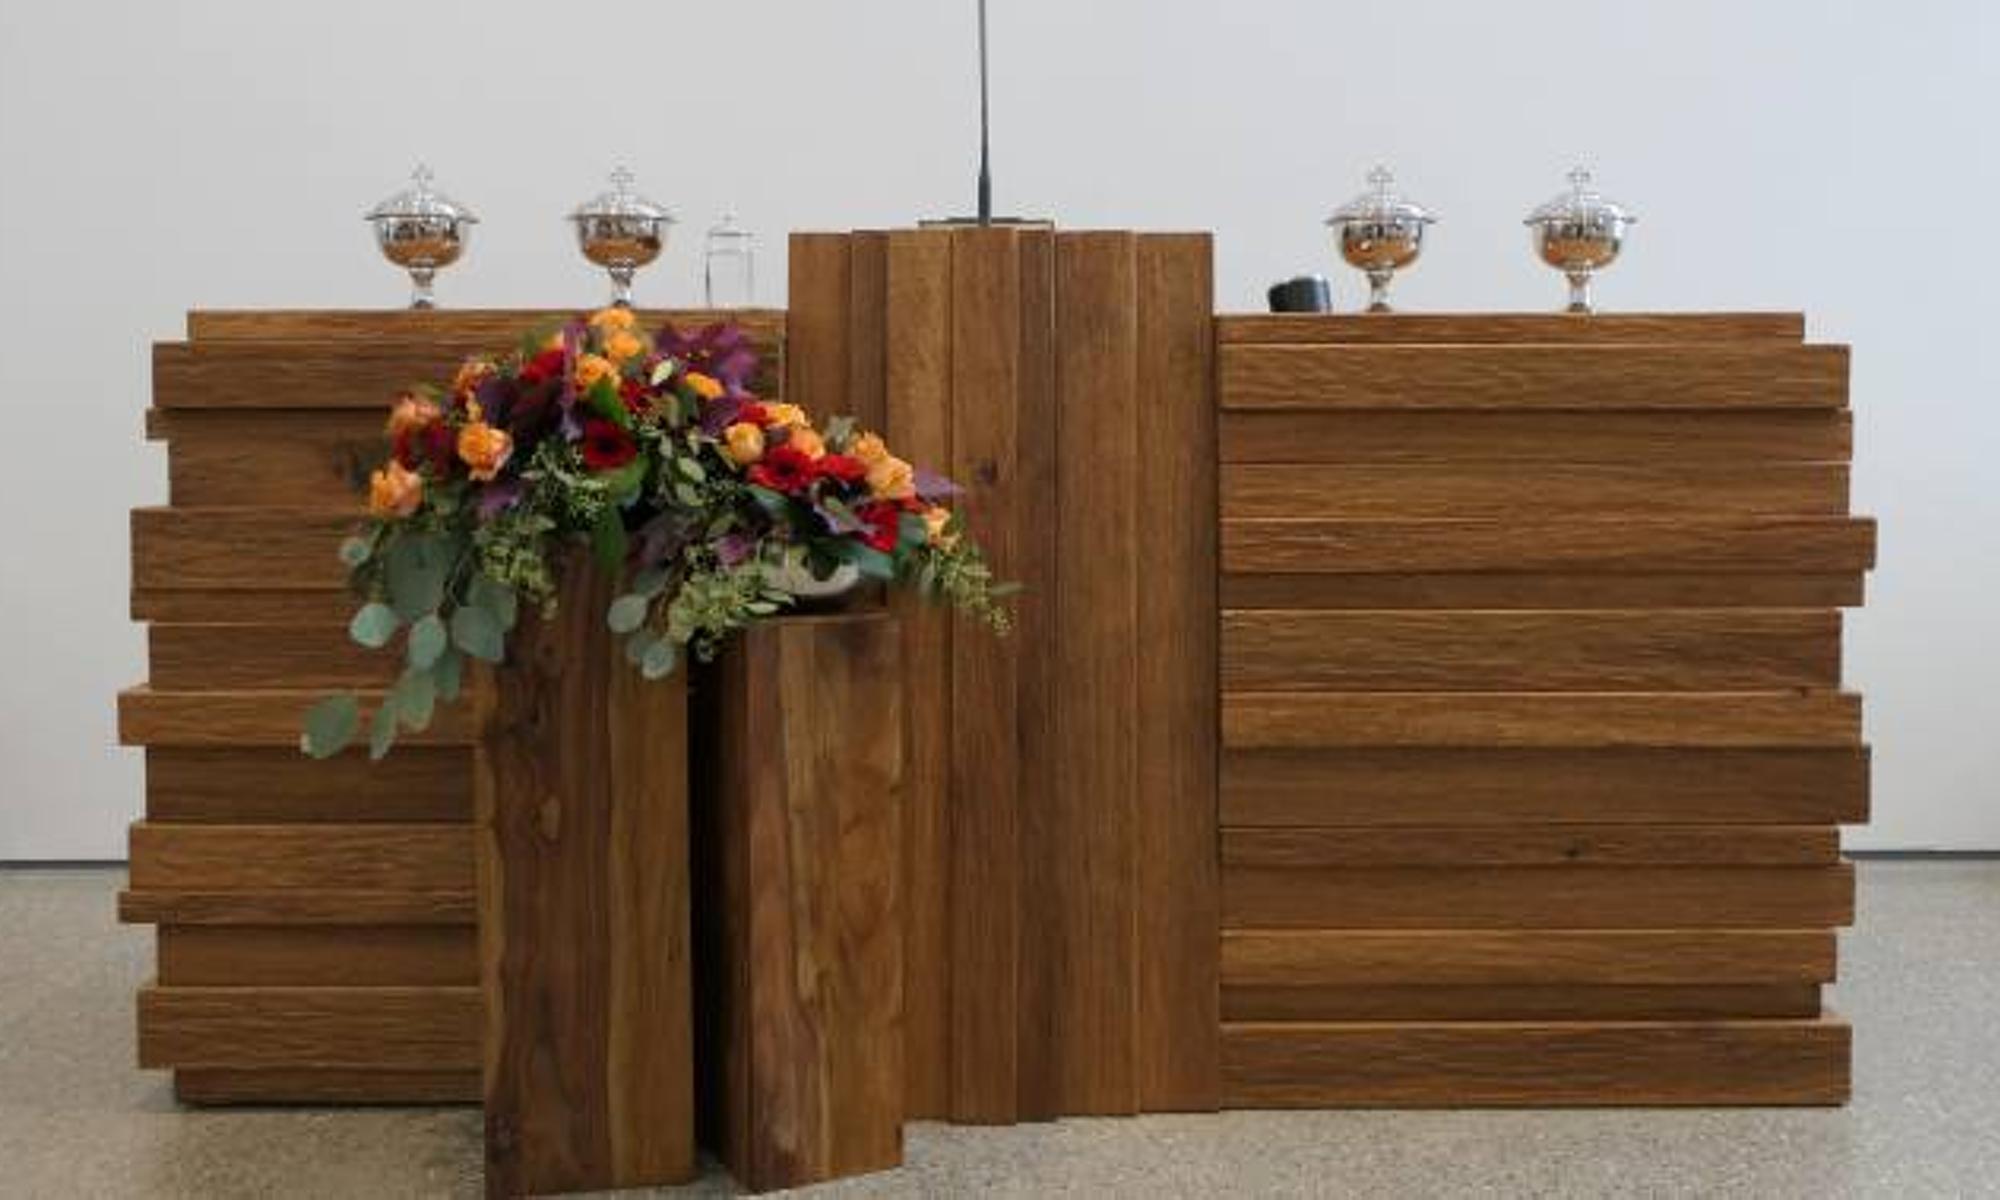 Der Altar - Tisch des Herrn und Ort der Evangeliumsverkündigung